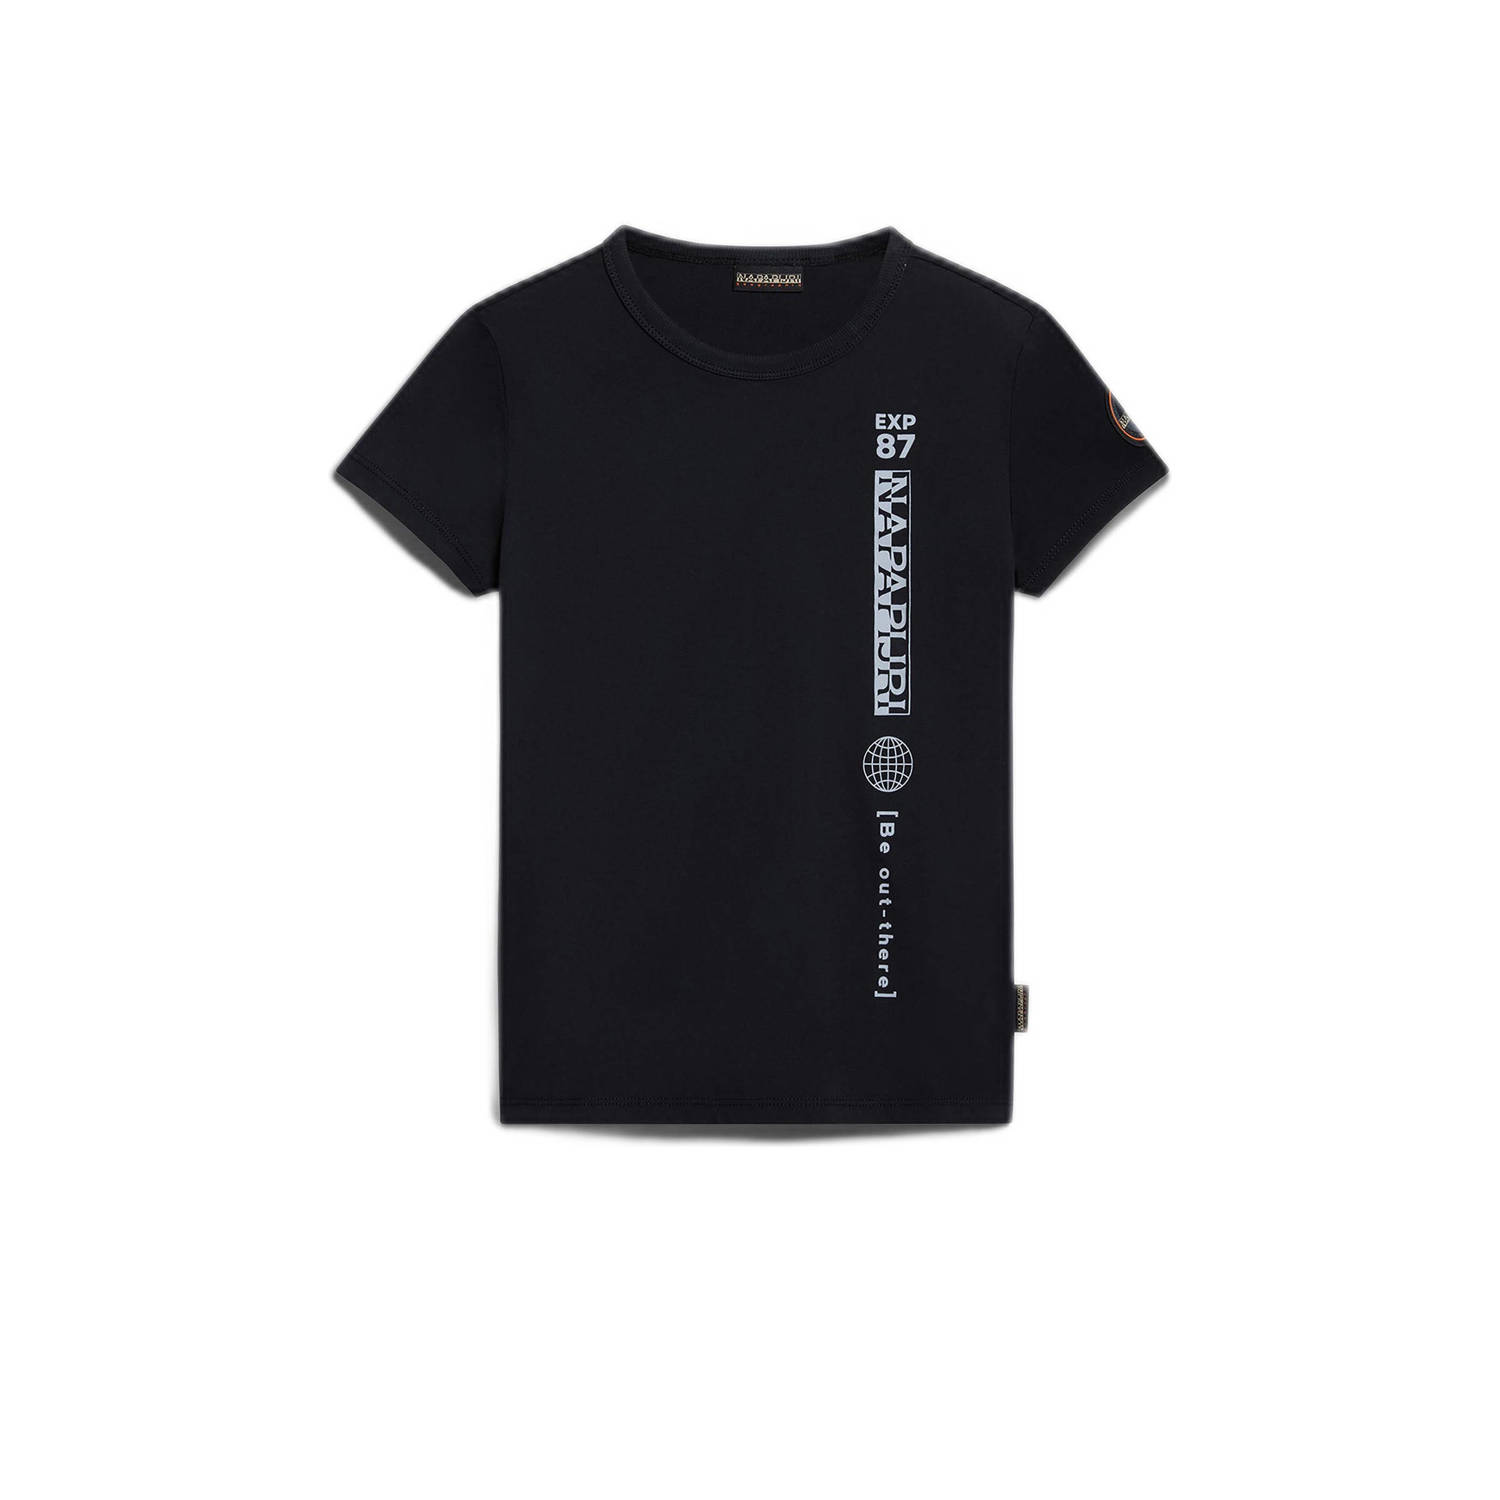 Napapijri T-shirt met logo zwart